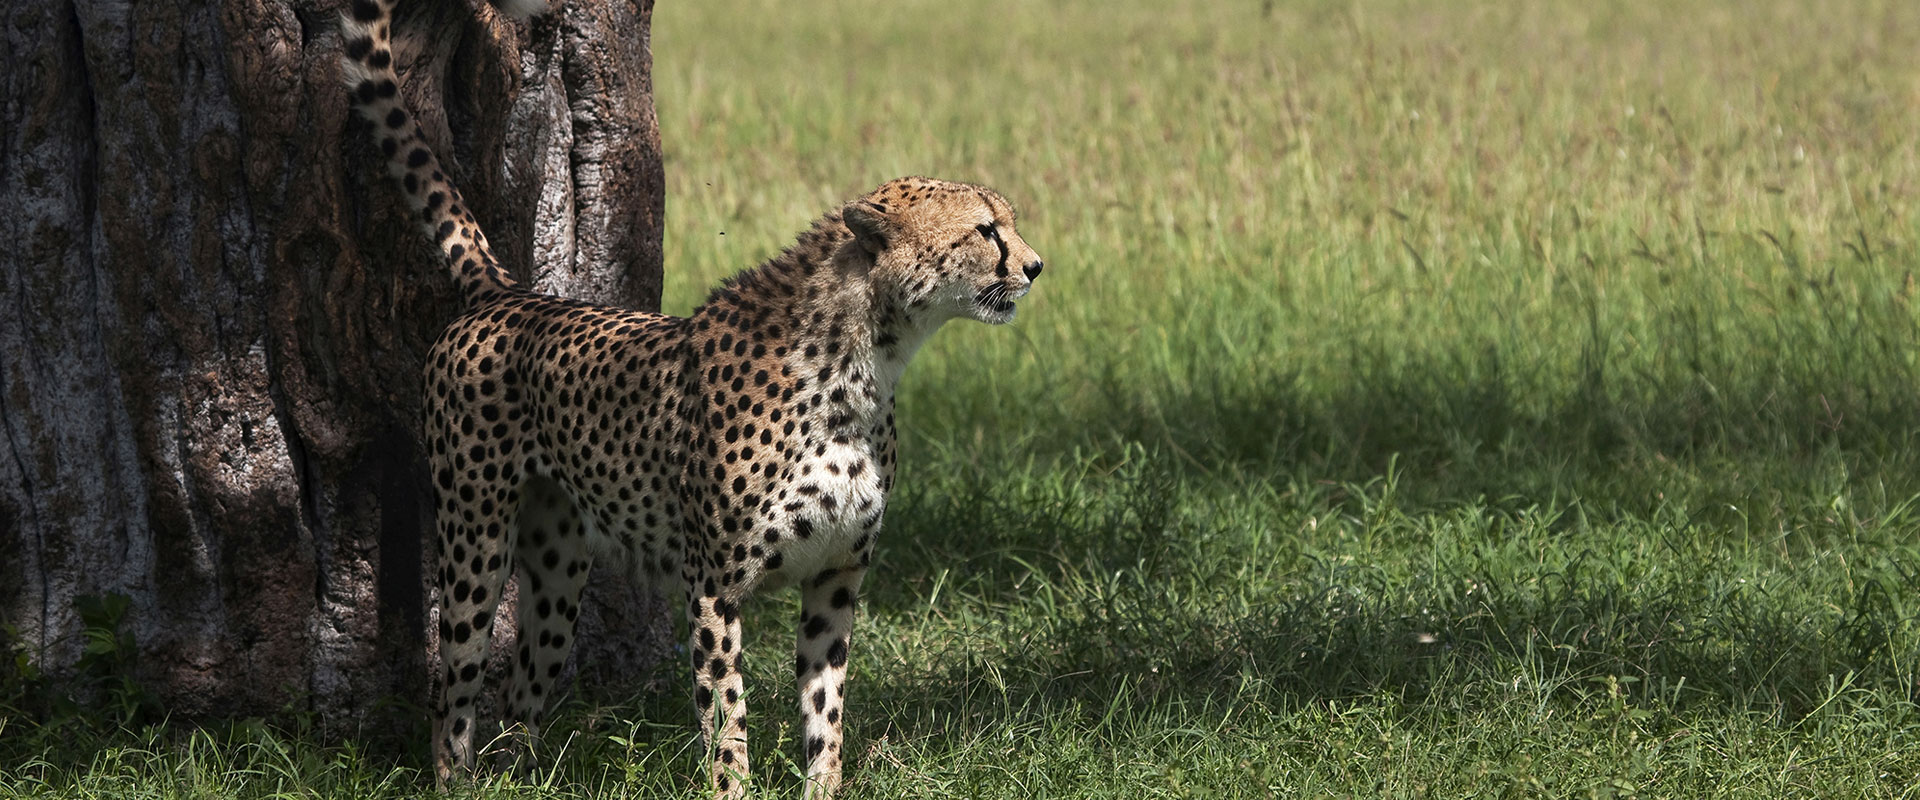 Kenya Safari Activities